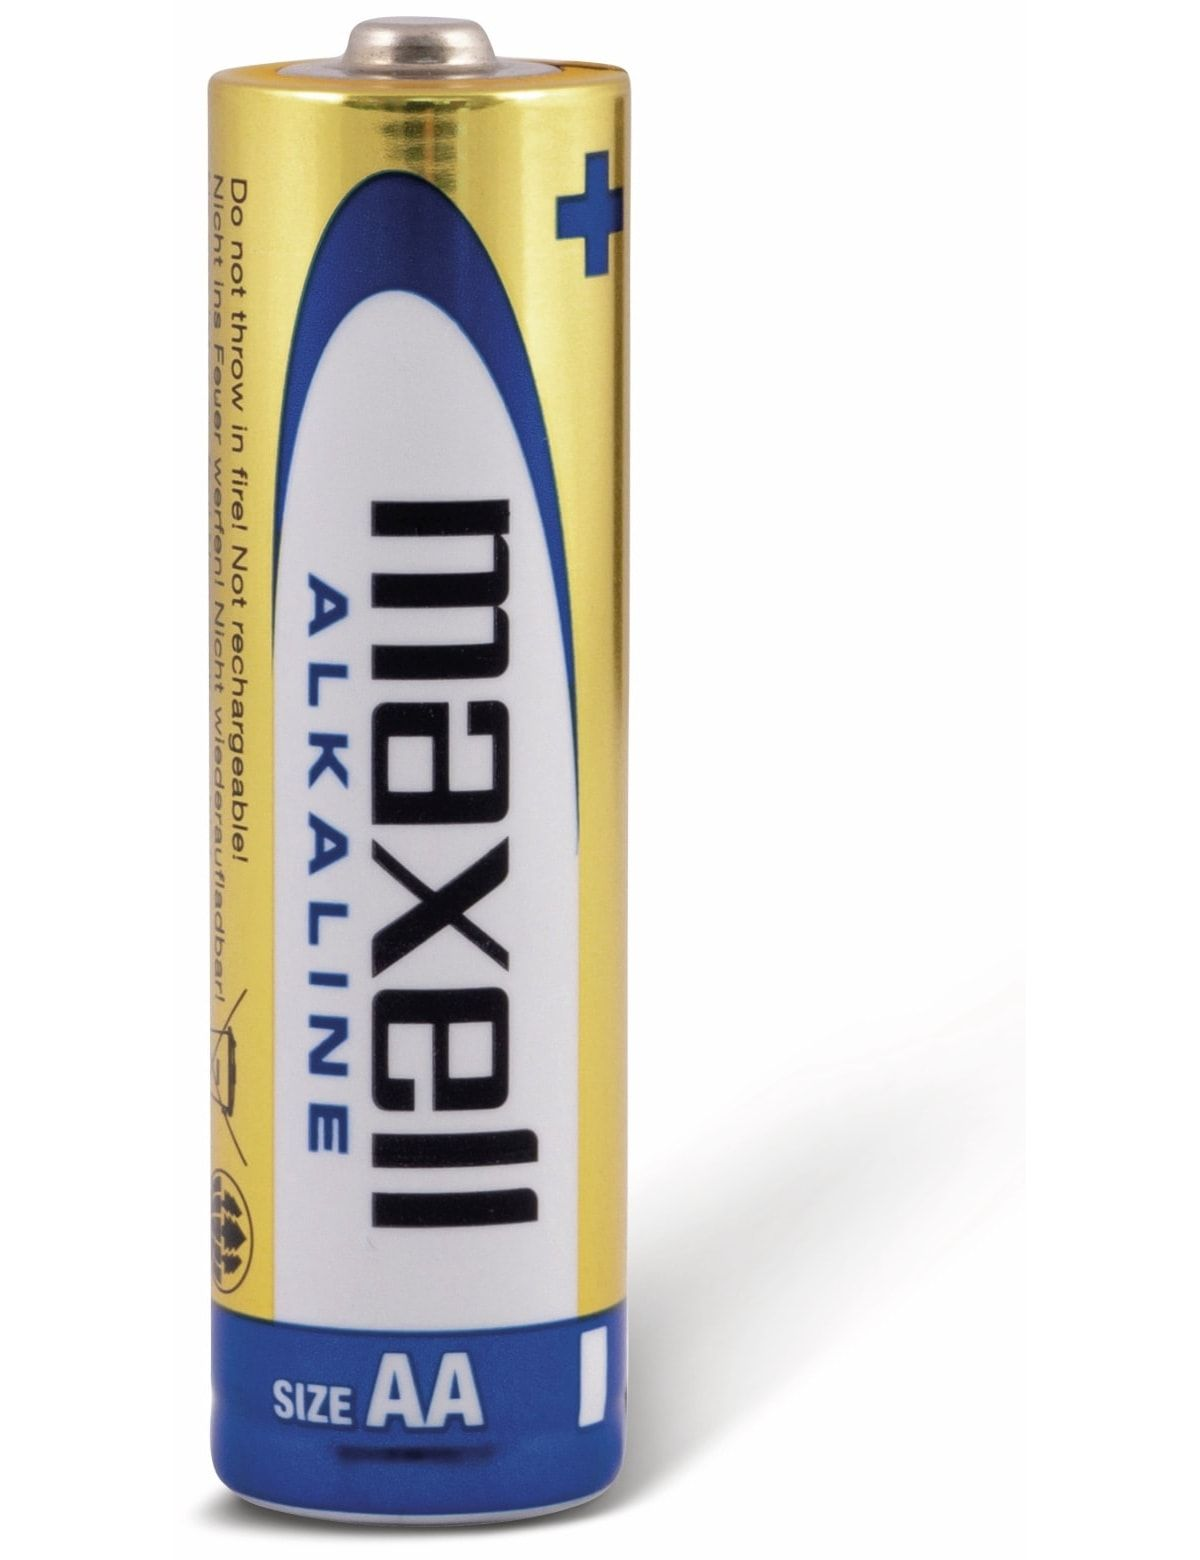 EU BATTERY AA MAXELL BLISTER*4 LR6 AA-Batterie Alkaline